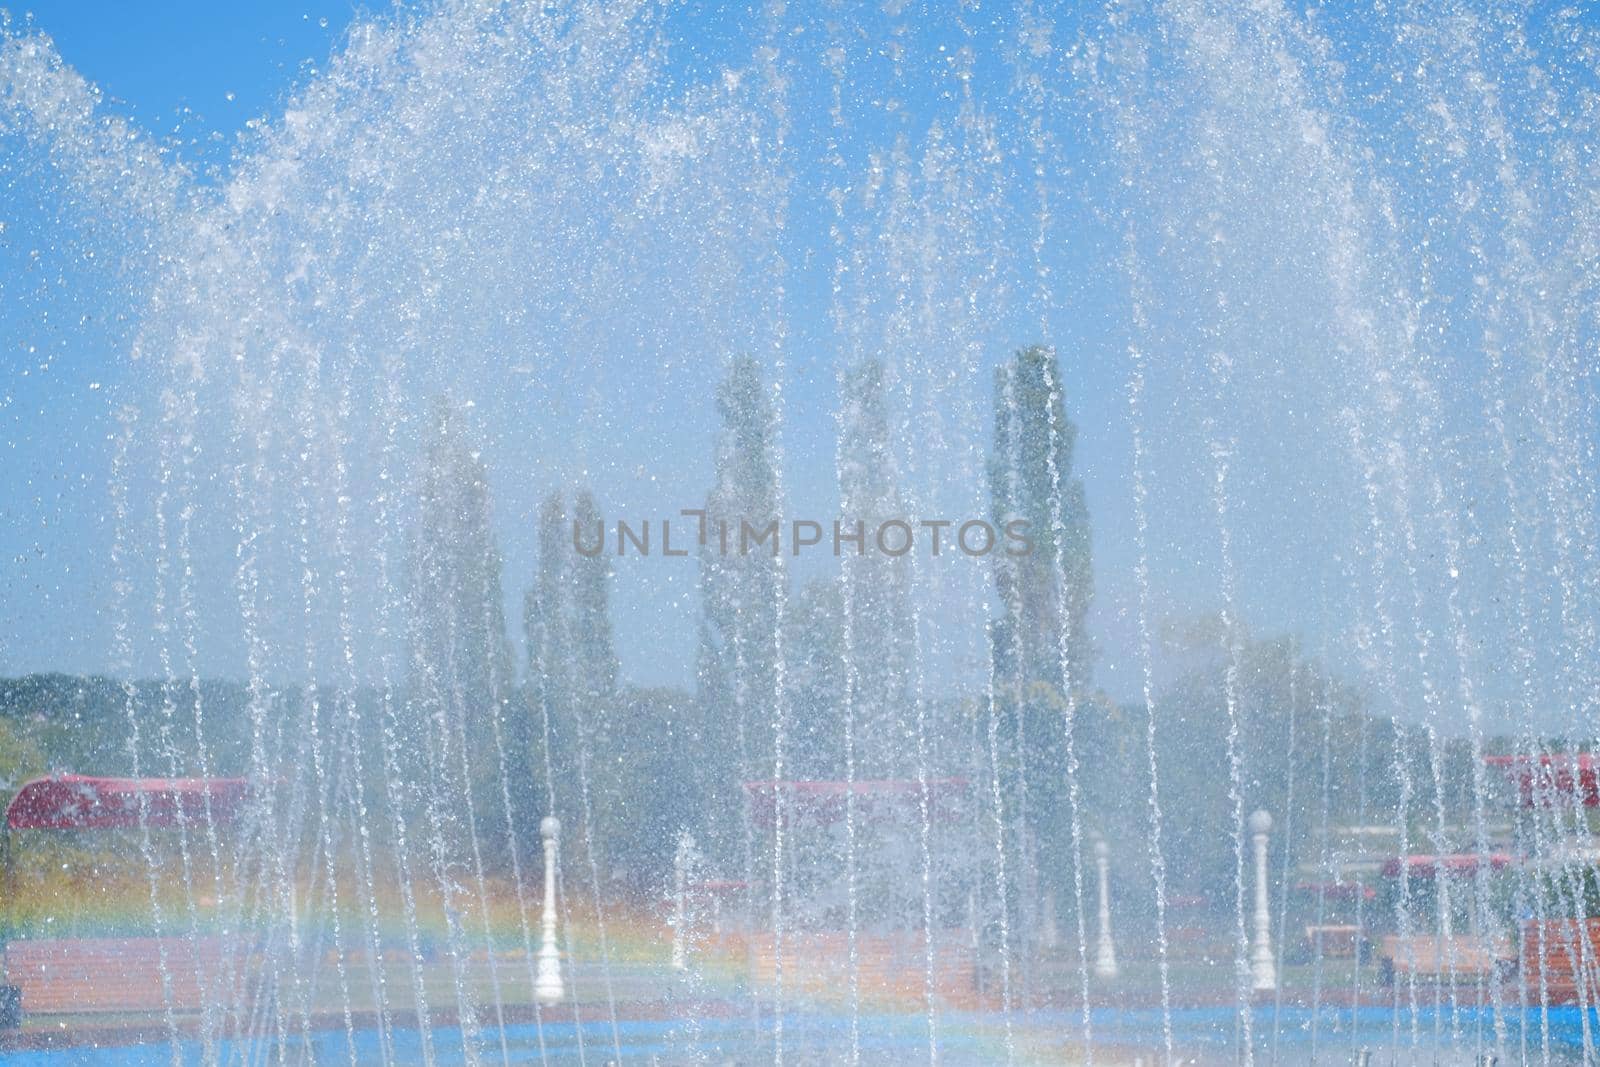 artesian fountain on blue sky with rainbow by Roberto